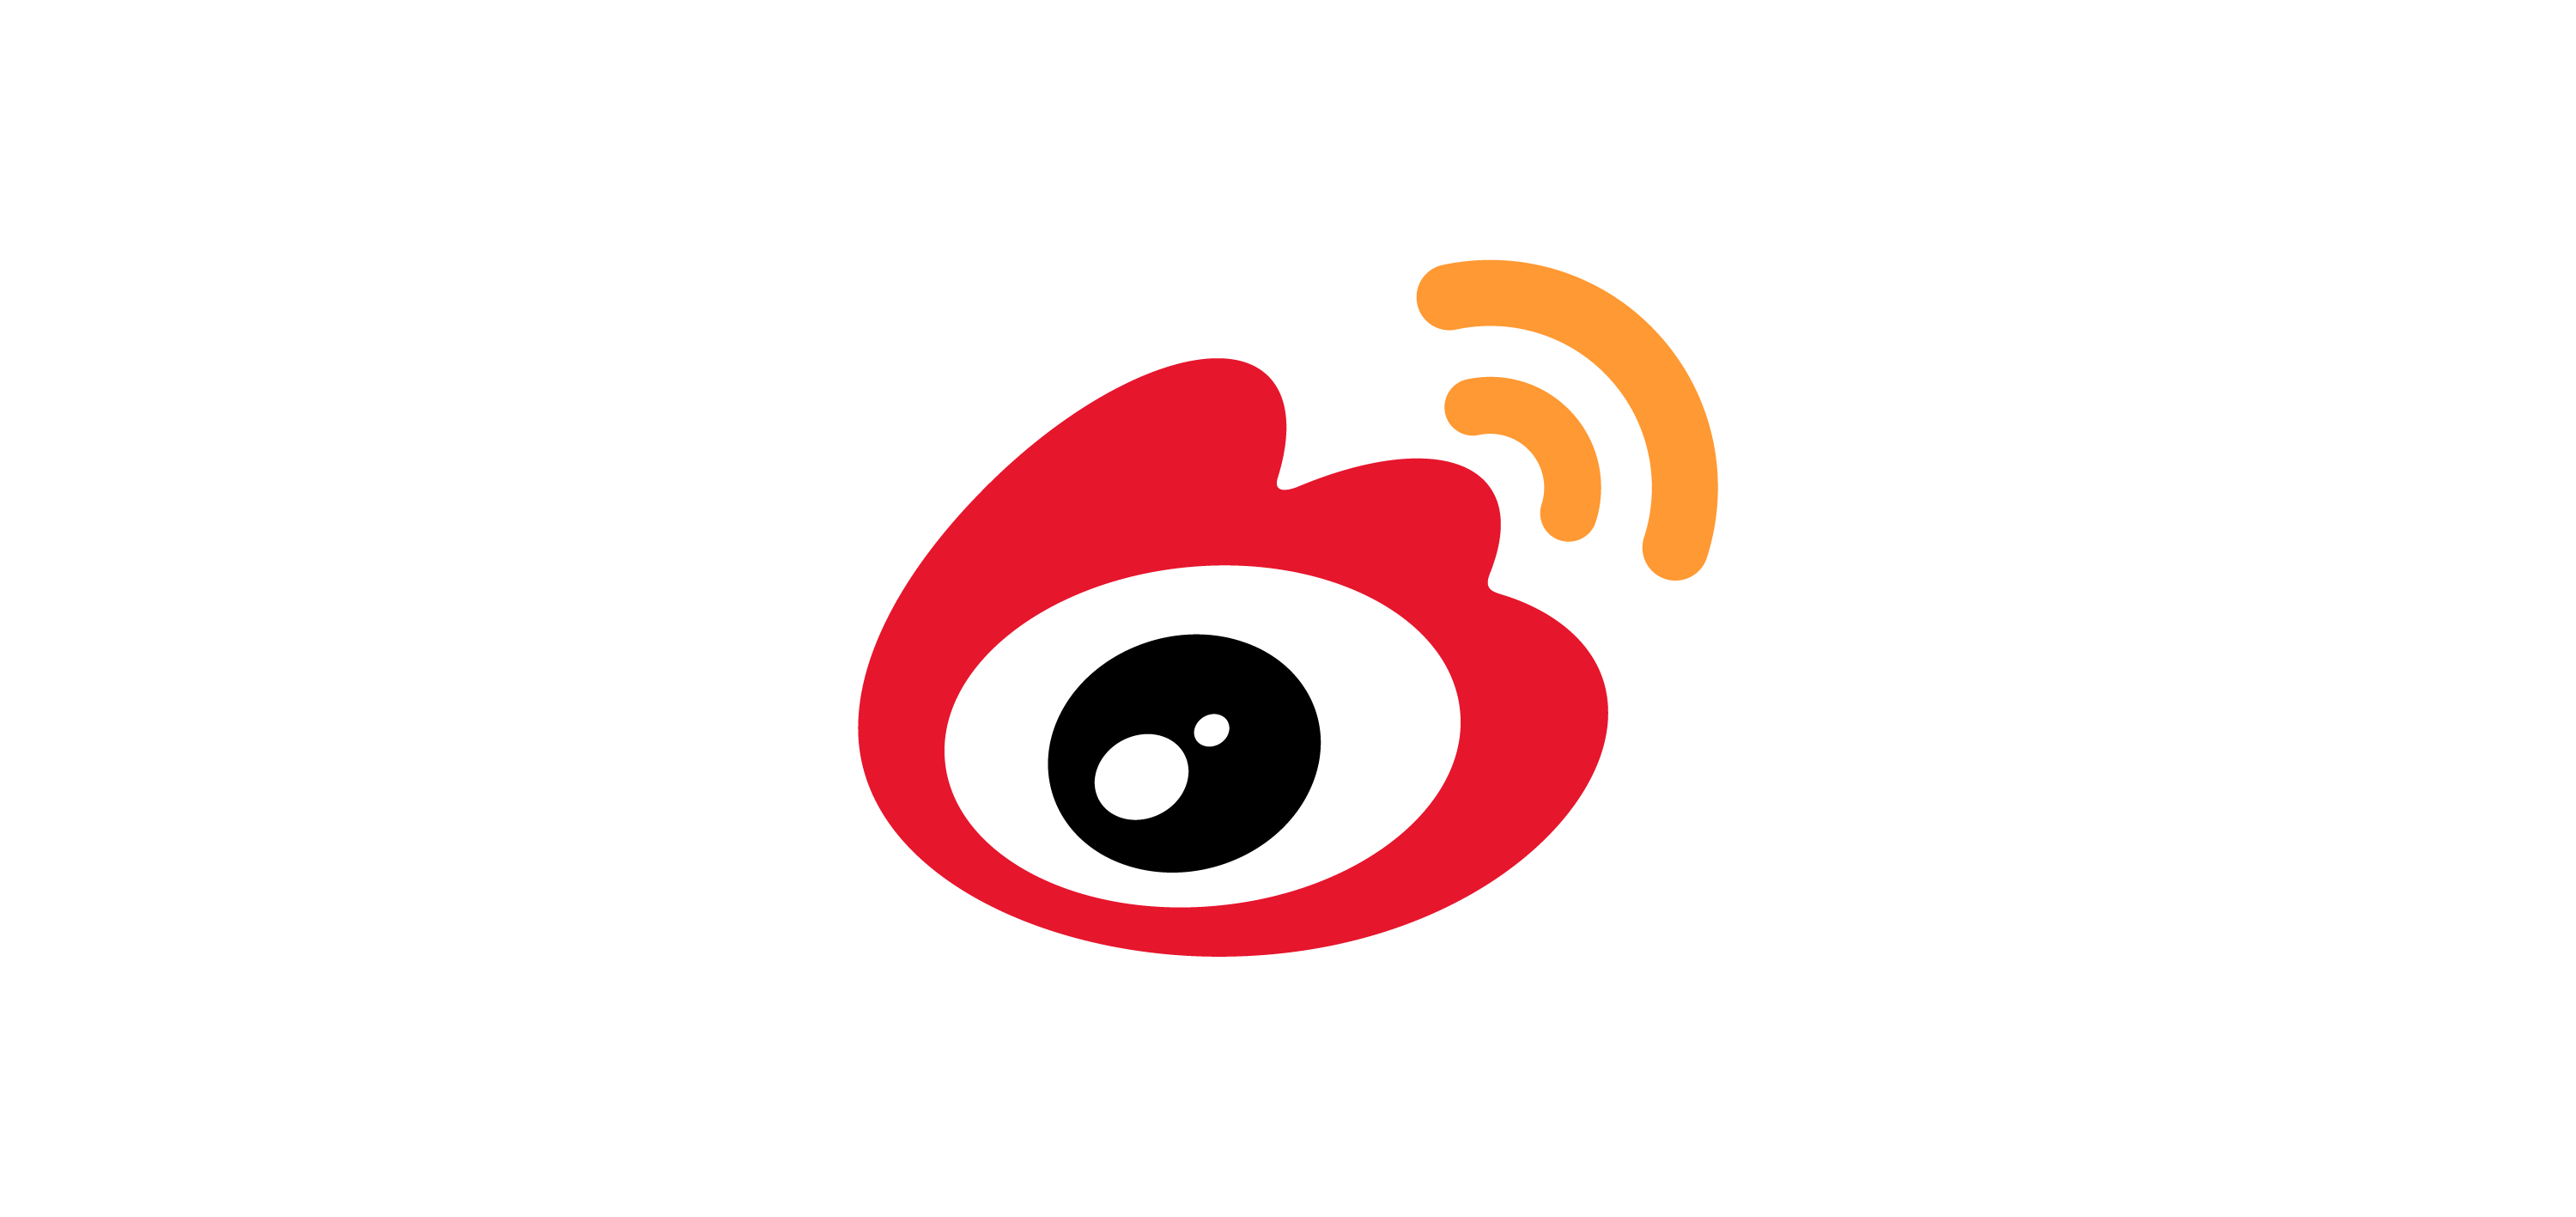 Sina Weibo logo vector